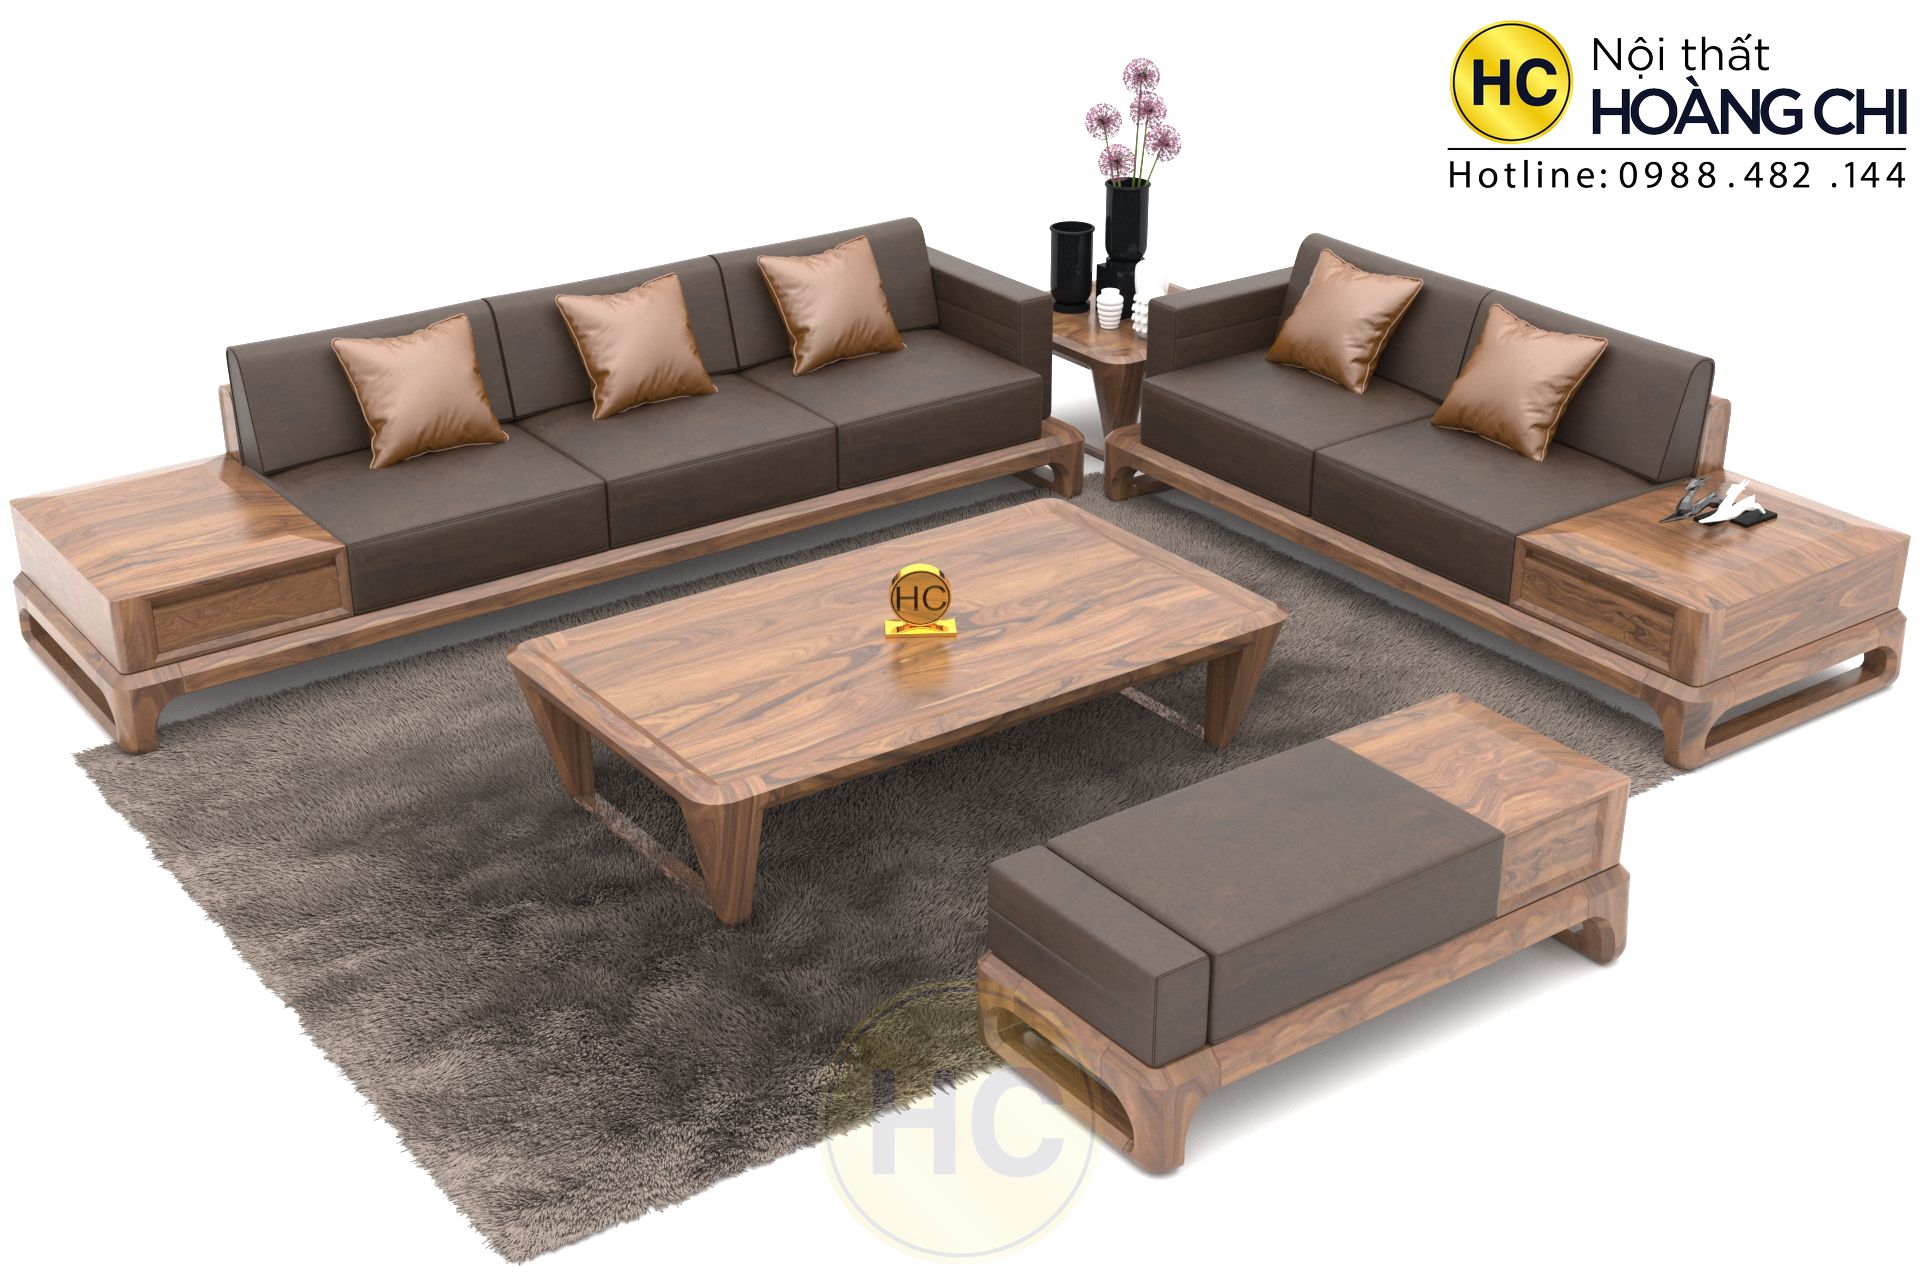 Sofa gỗ với các họa tiết độc đáo, màu sắc đa dạng và chất liệu cao cấp sẽ làm cho không gian phòng khách của bạn trở nên sang trọng và ấn tượng. Cùng đến và chiêm ngưỡng những chiếc sofa gỗ đẹp khiến bạn không thể rời mắt.